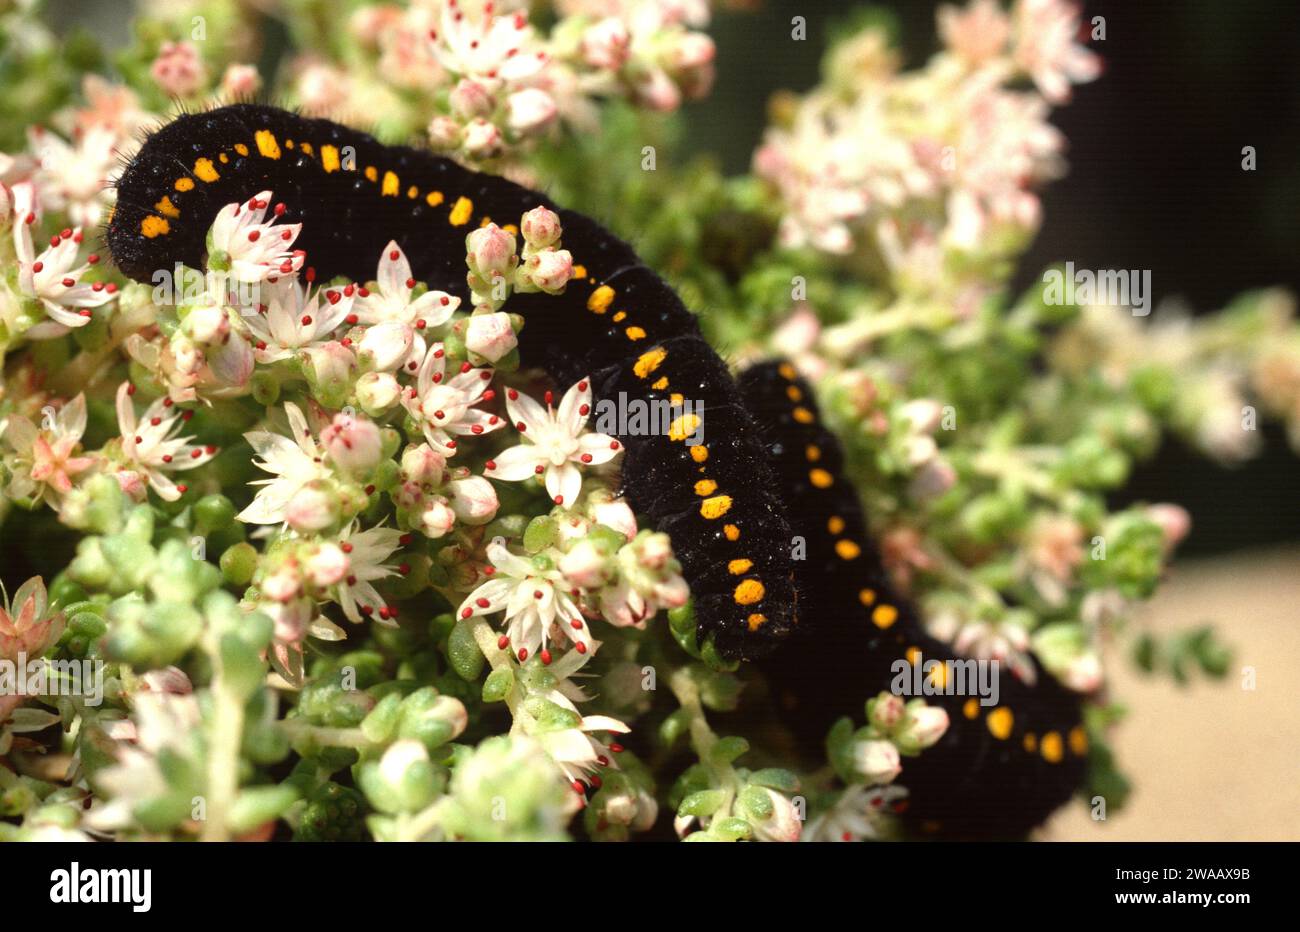 Mountain Apollo (Parnassius apollo) is a butterfly native to Europe mountains. Caterpillar on a feeding plant (Sedum sp.). Stock Photo